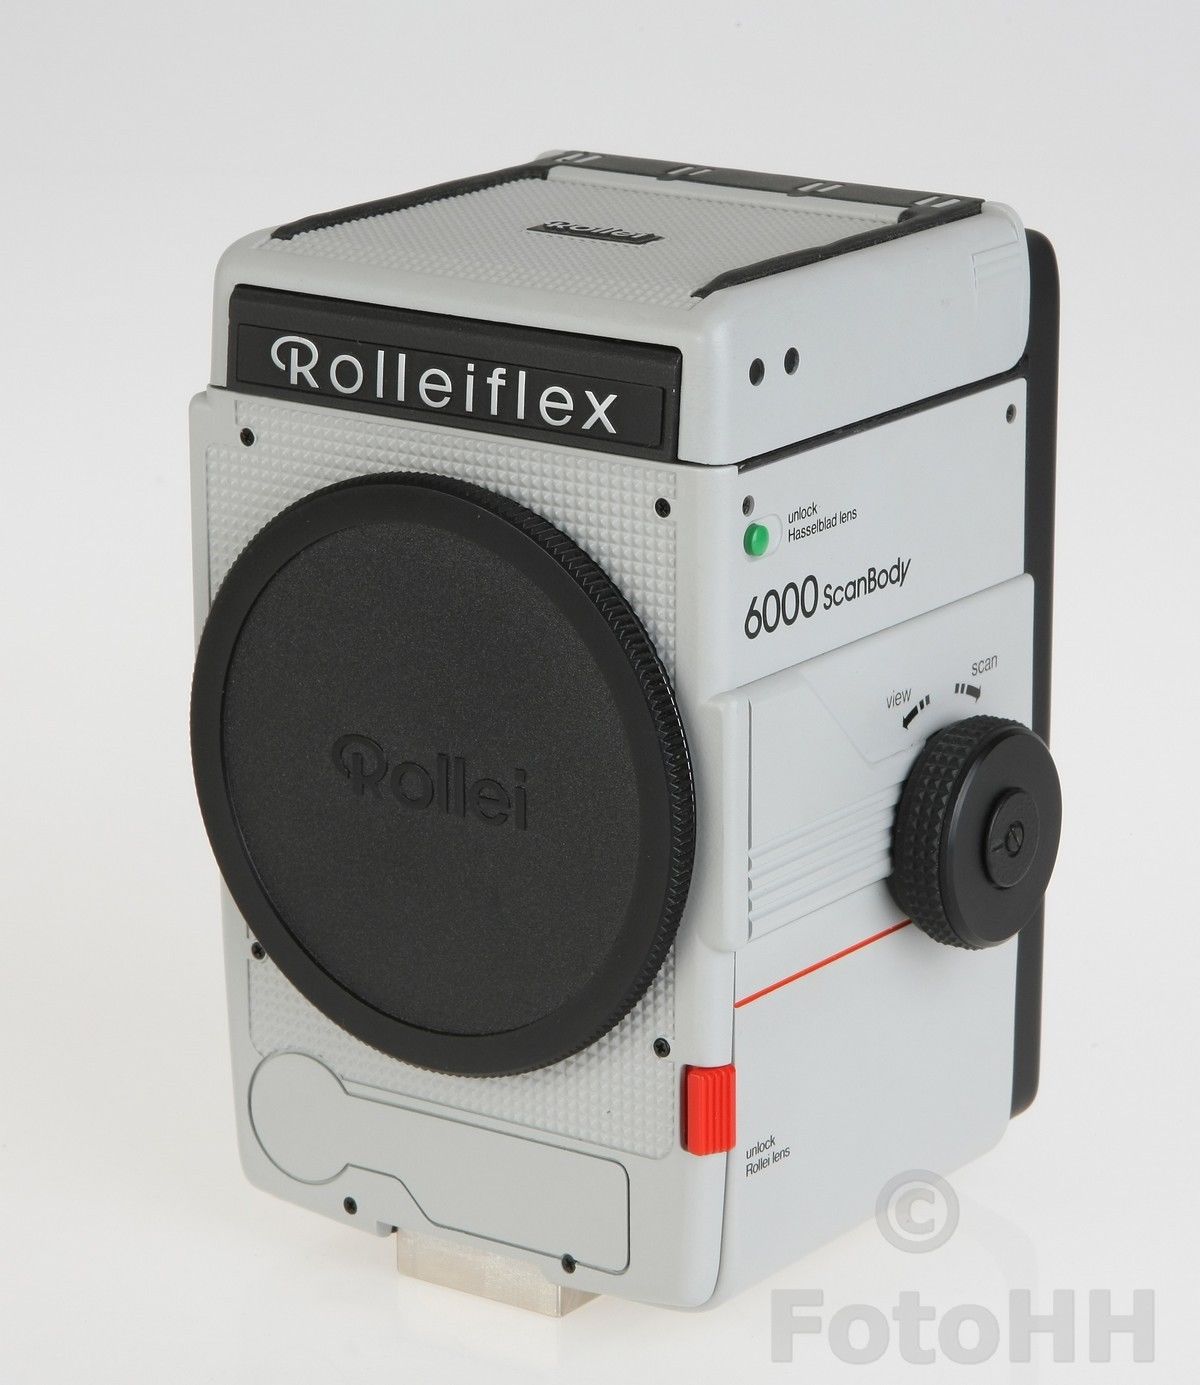 Rollei Rolleiflex-6000